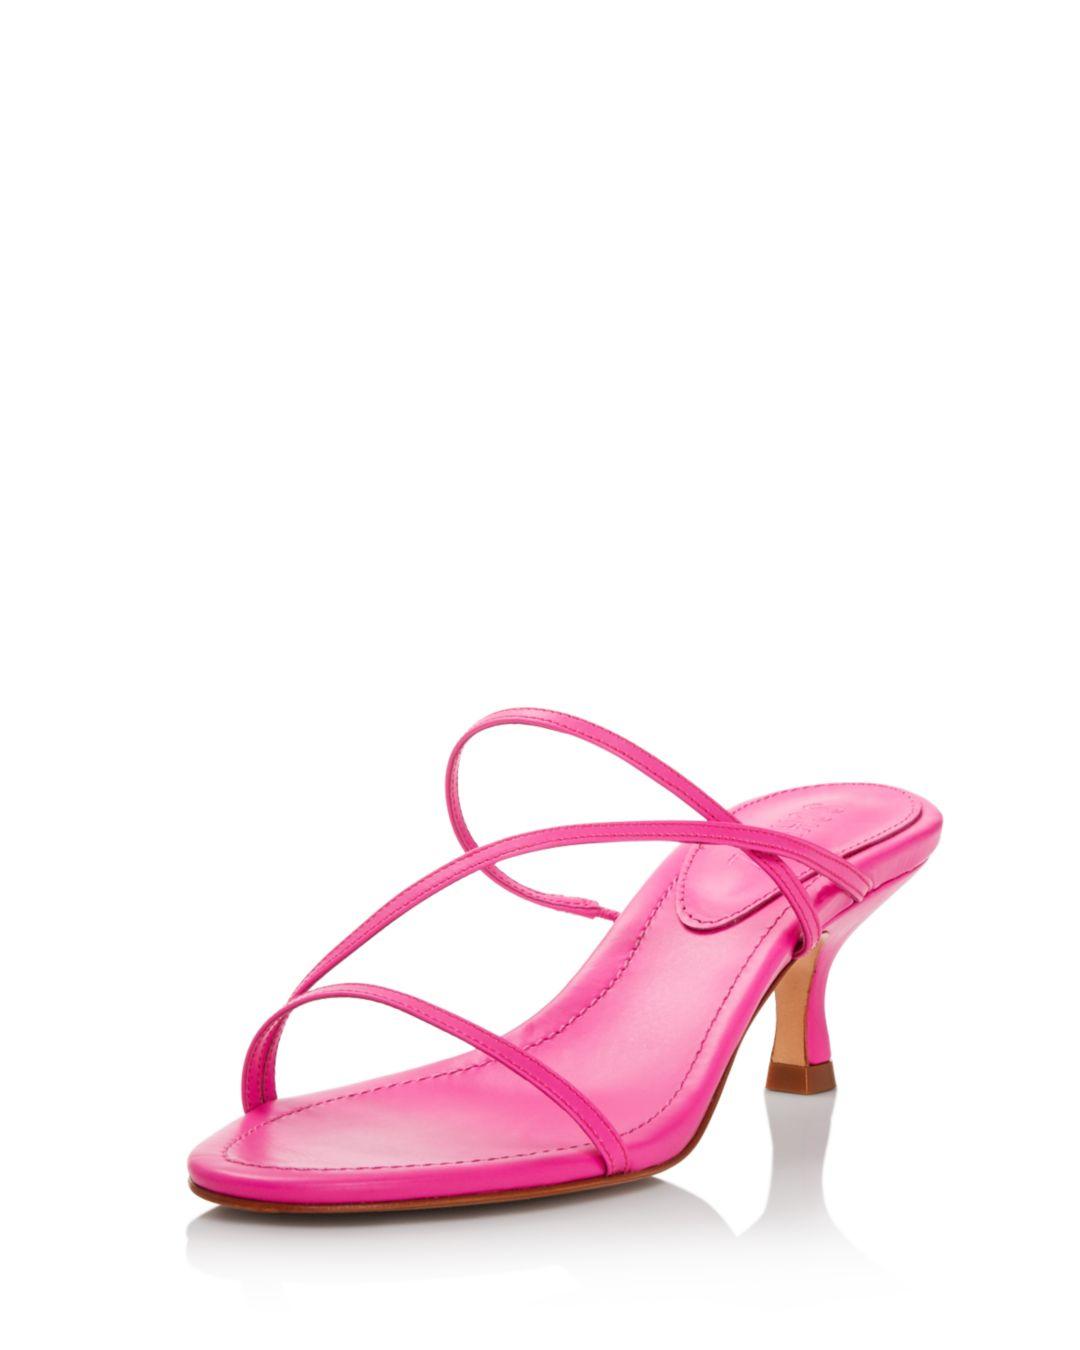 Schutz Women's Evenise Kitten Heel Sandals in Neon Pink (Pink) | Lyst